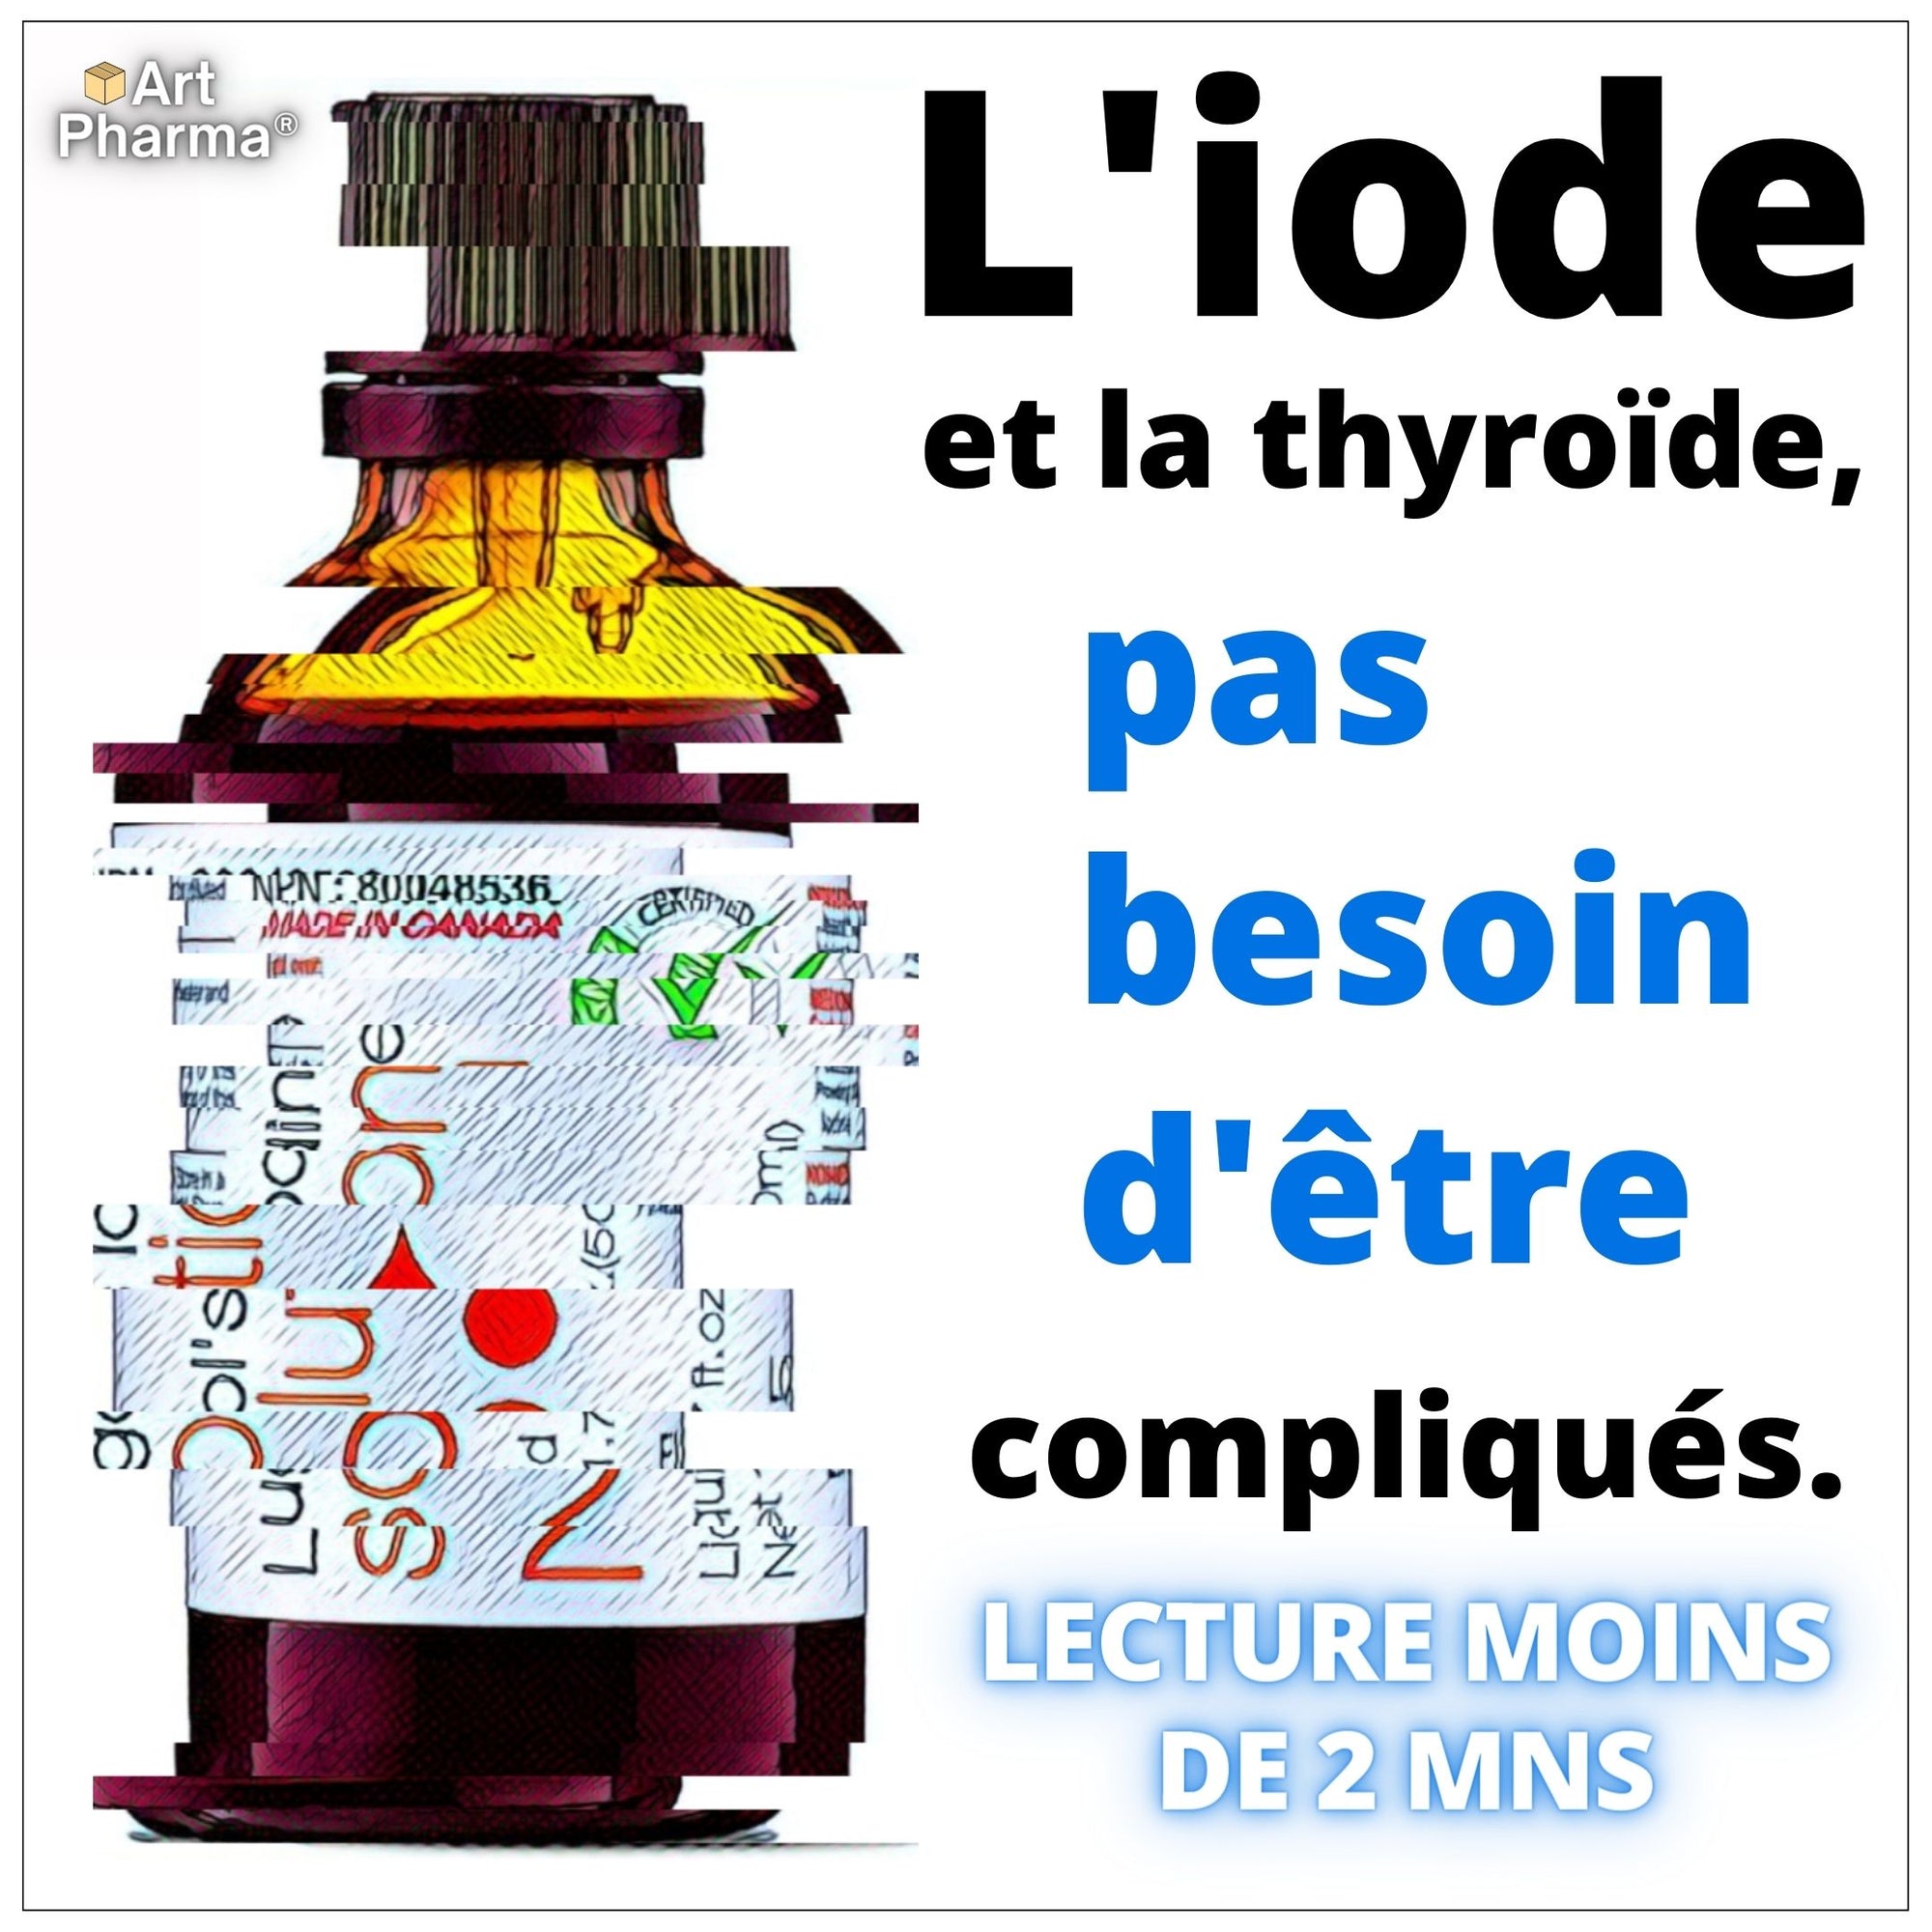 Art Pharma Article Lugol's et l'Iode Tout Savoir